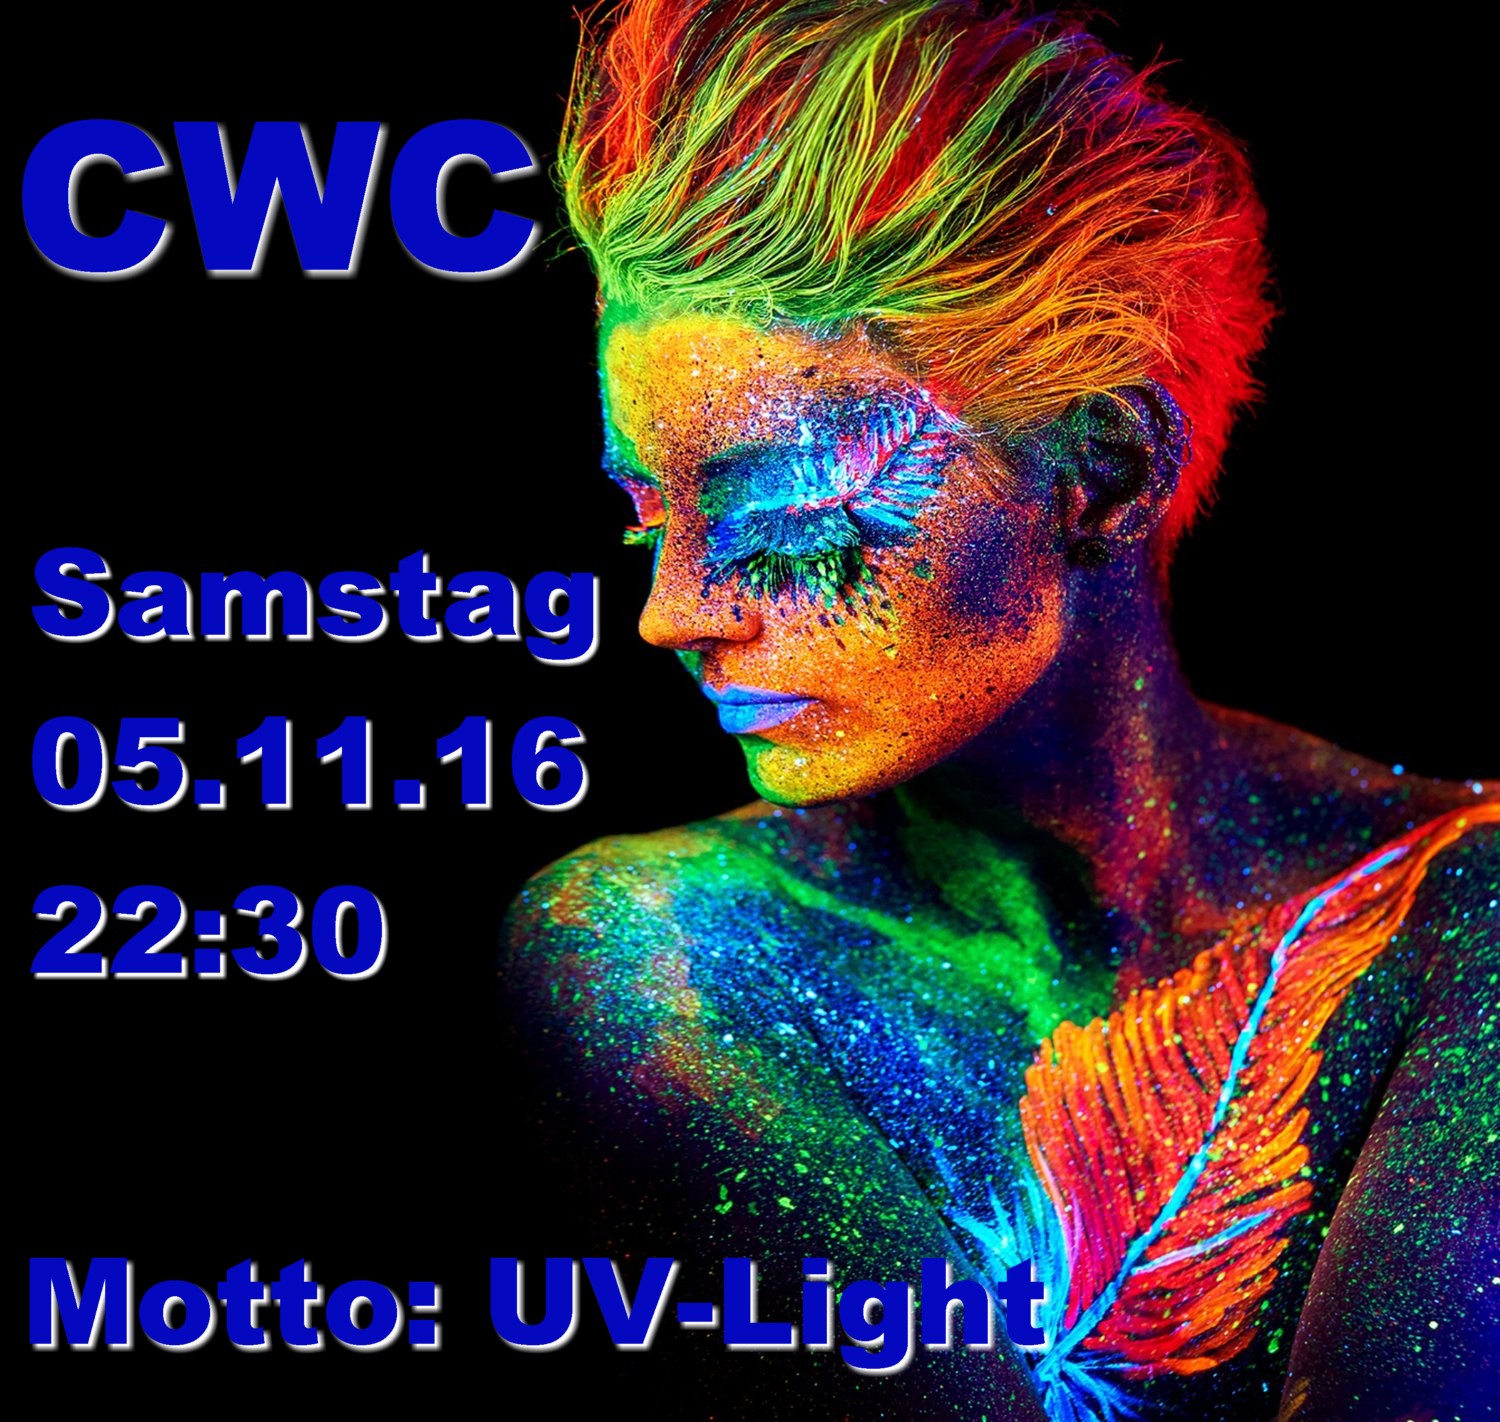 UV-Light 05.11